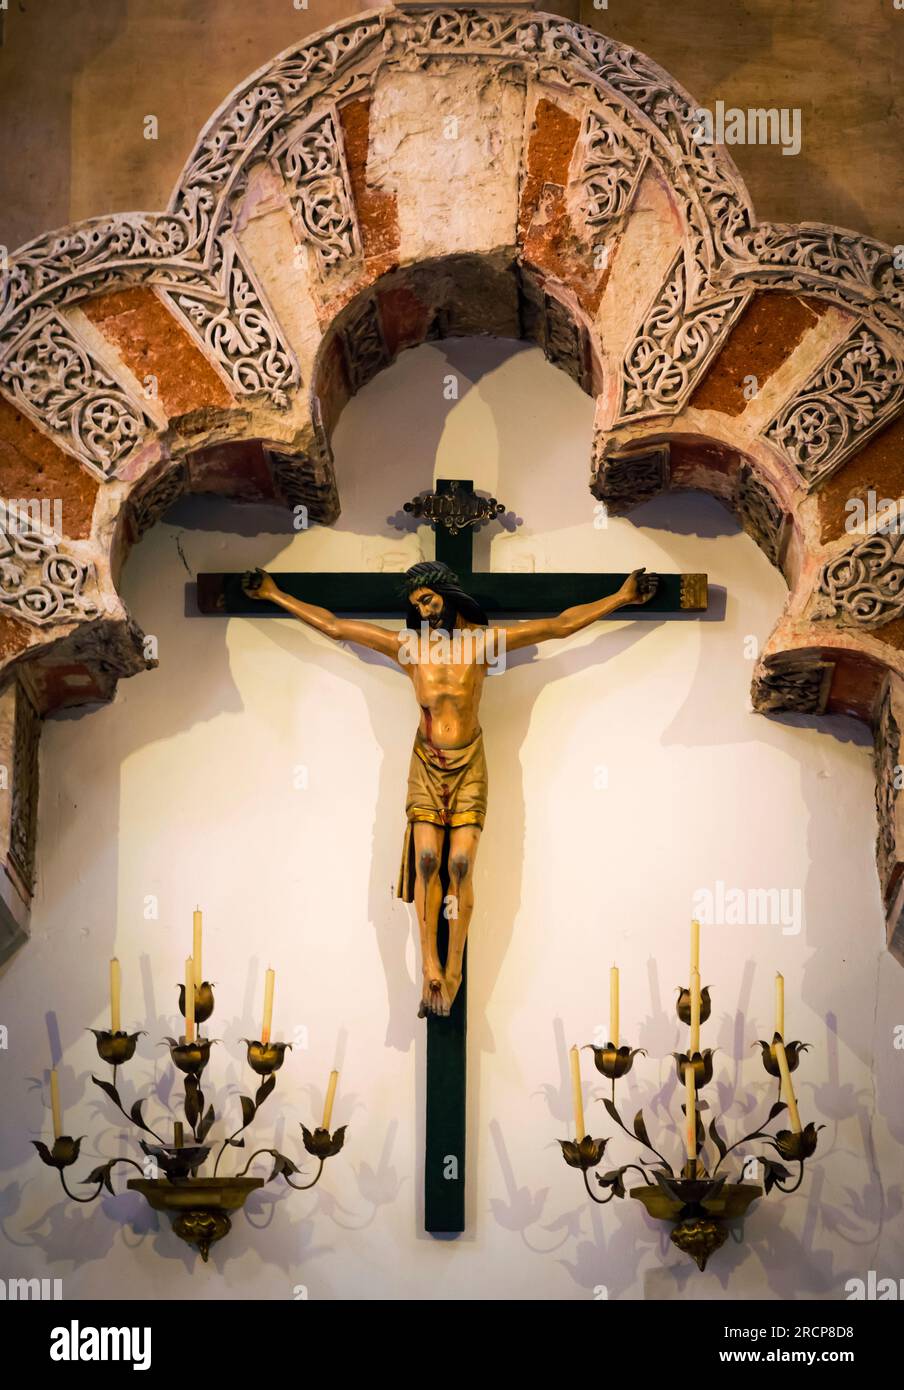 Cordoba, Provinz Cordoba, Andalusien, Südspanien. Innere der Großen Moschee, La Mezquita. Ein Kruzifix, Symbol des Christentums, hängt unter einem Stockfoto